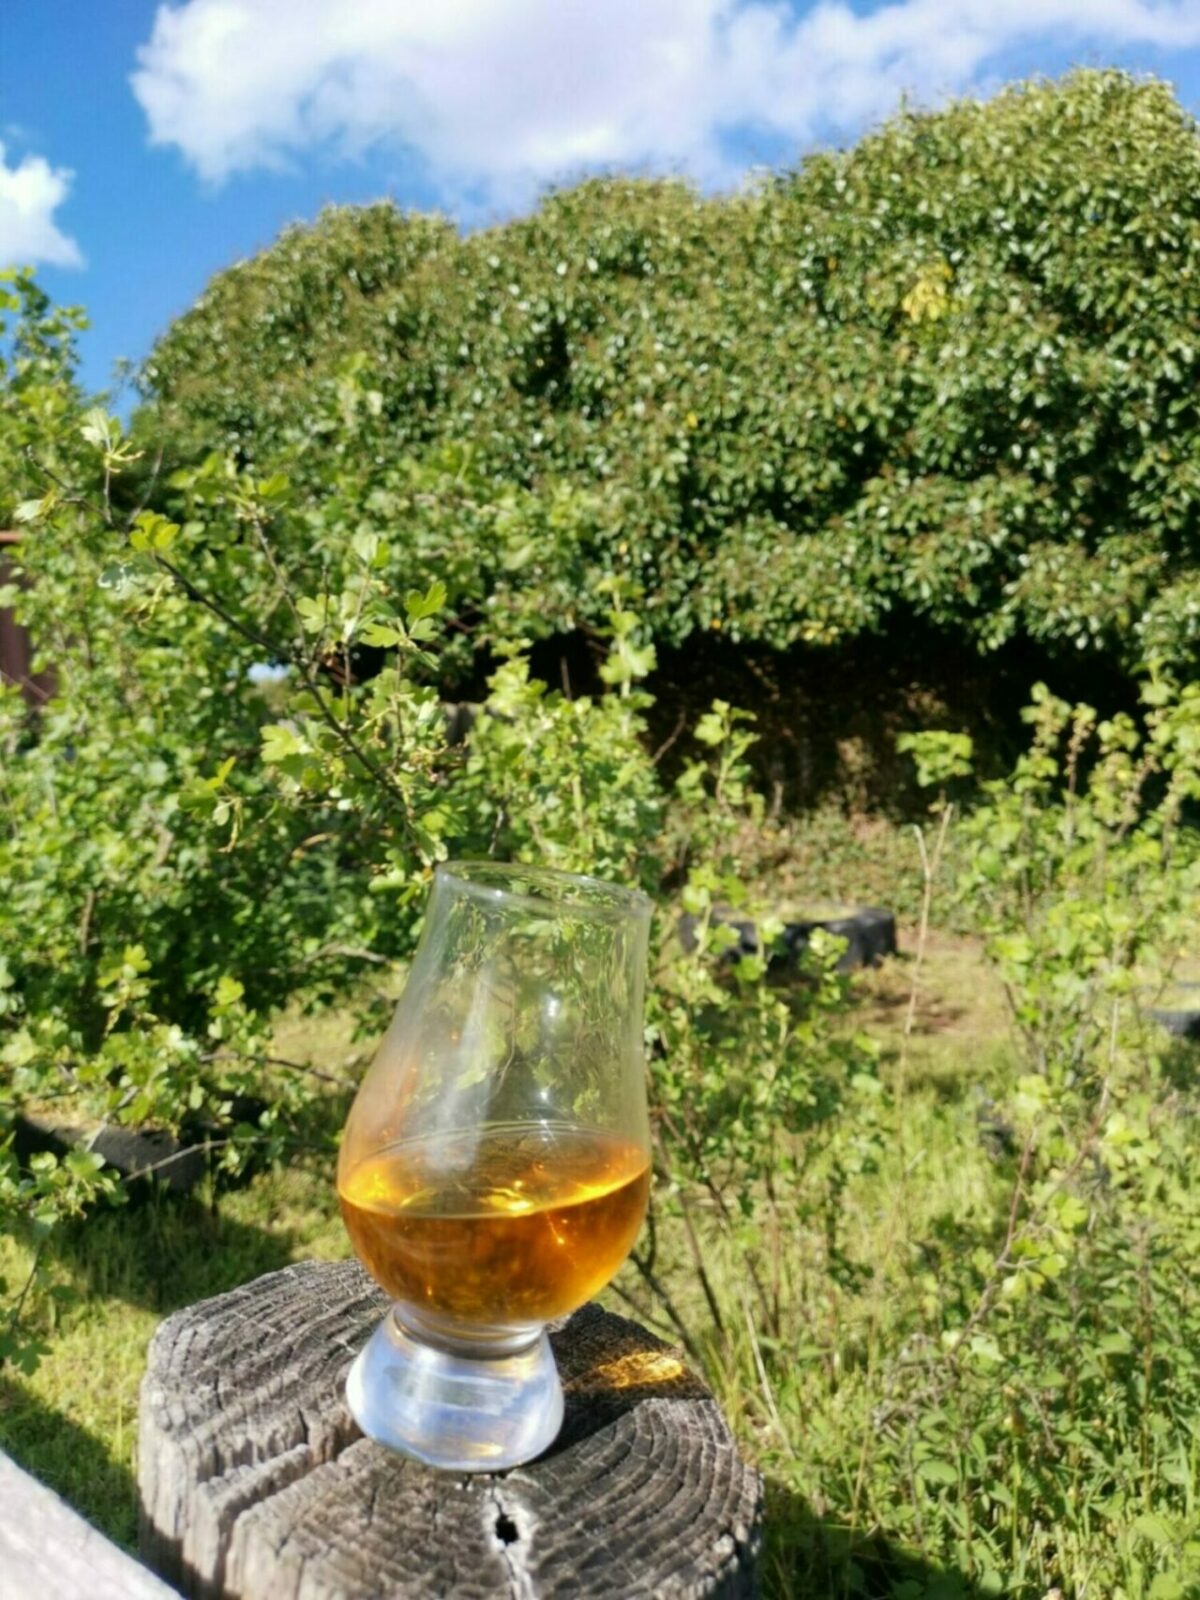 Whiskyglas in der Natur